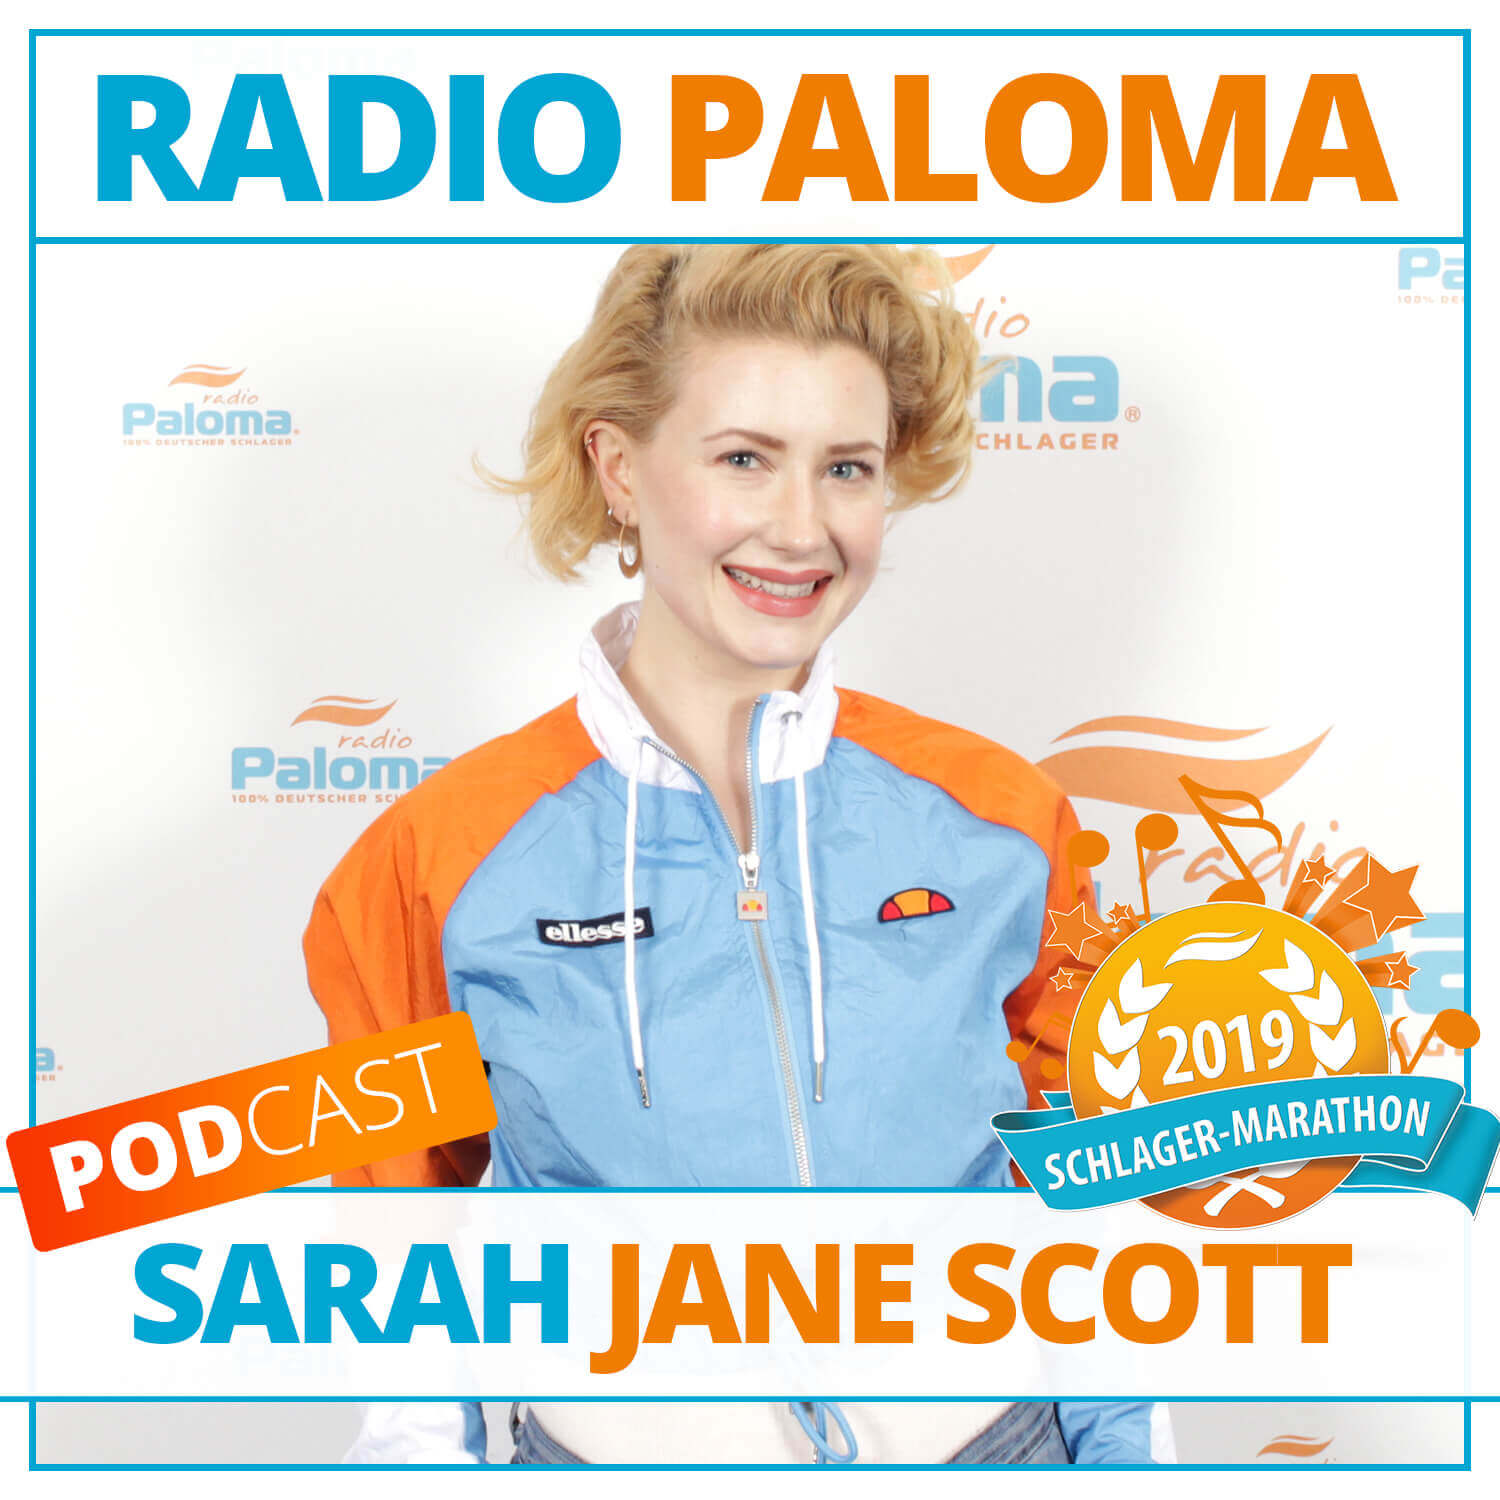 Der Radio Paloma Schlager-Marathon 2019 mit Sarah Jane Scott